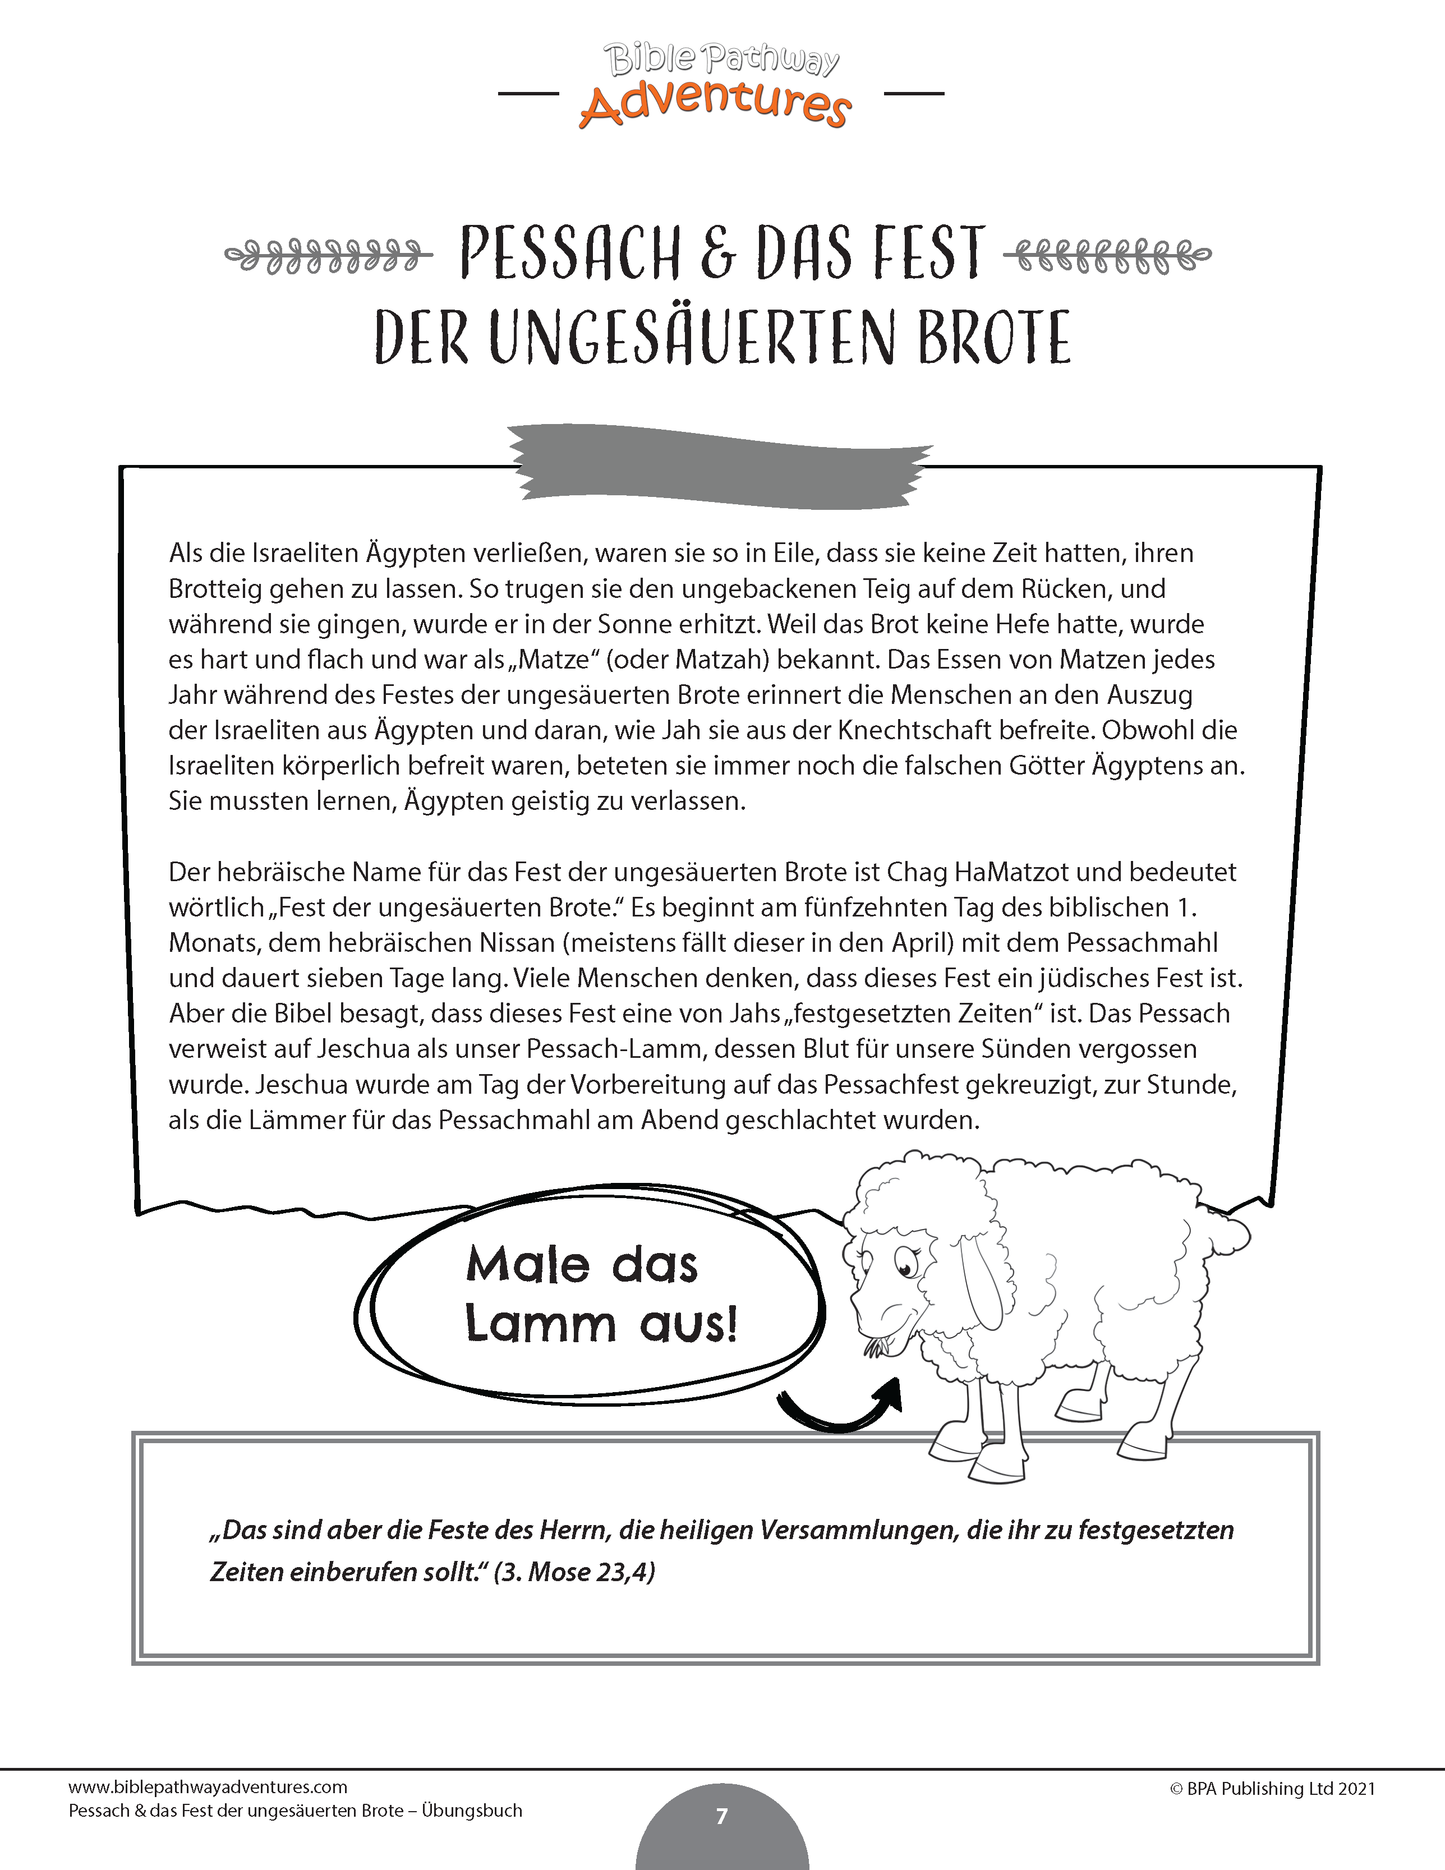 Pessach & das Fest der ungesäuerten Brote - Übungsbuch (PDF)